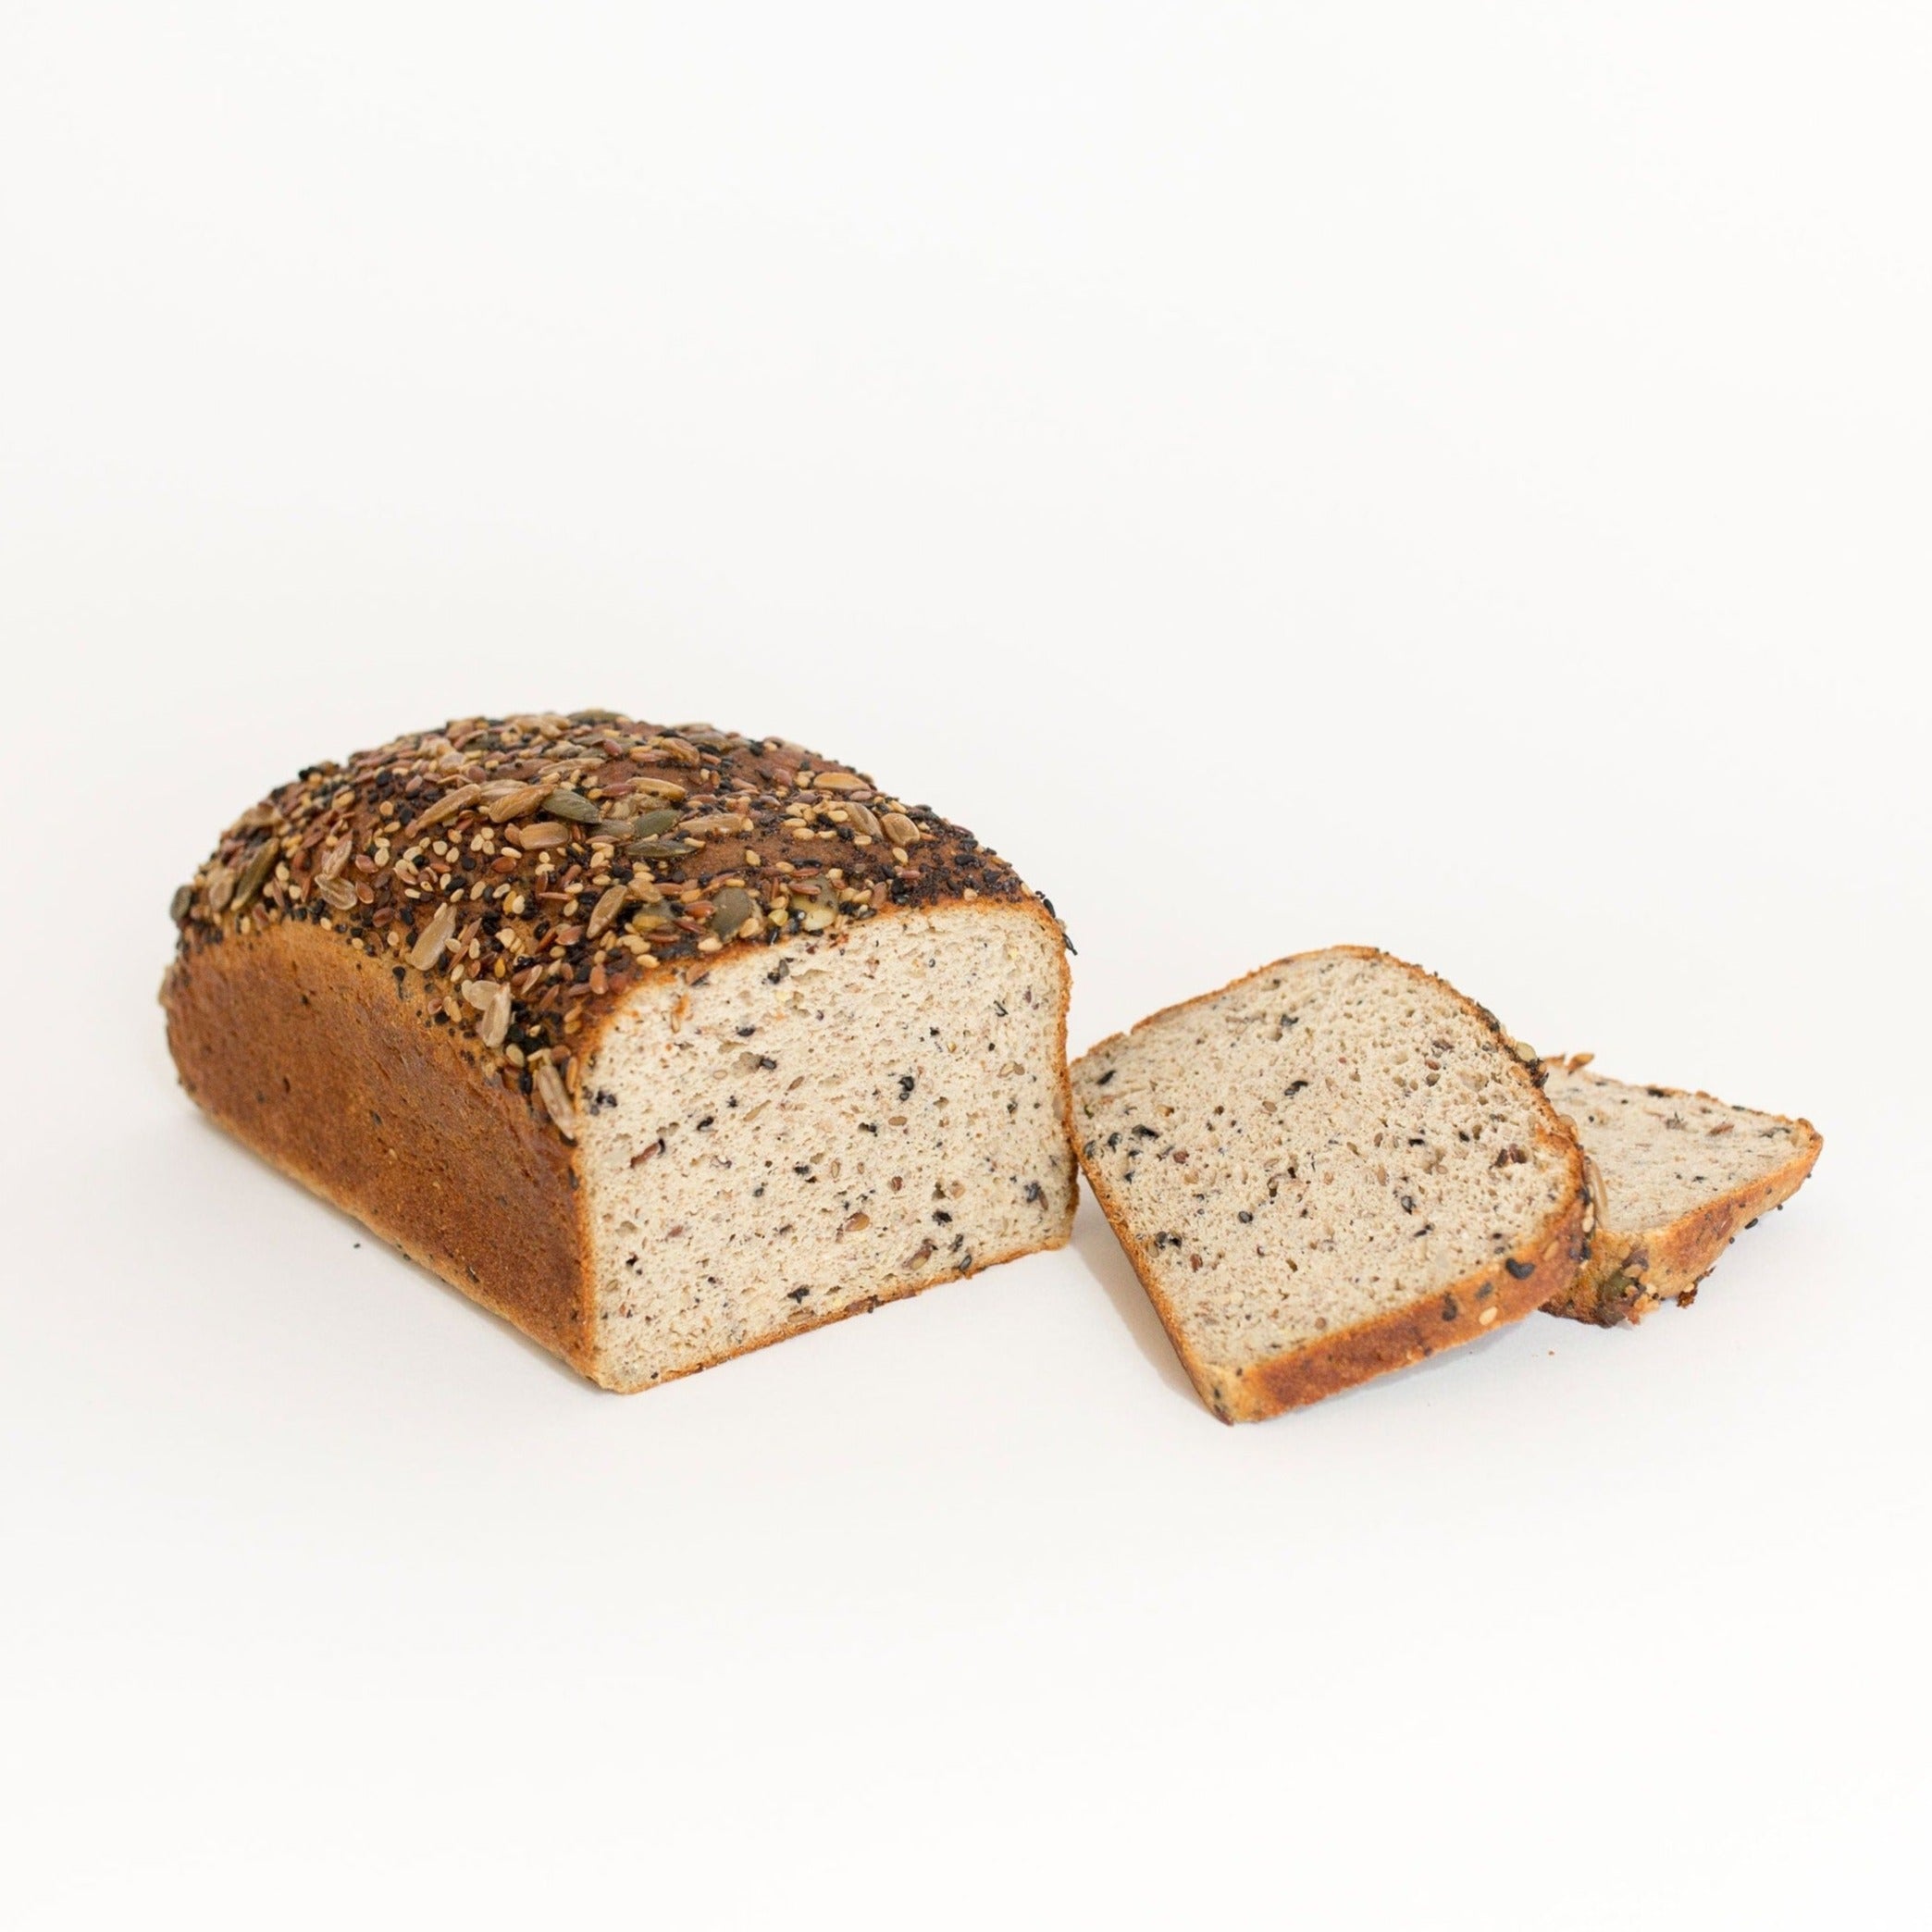 Pan de semillas sin gluten y bajo en carbohidratos